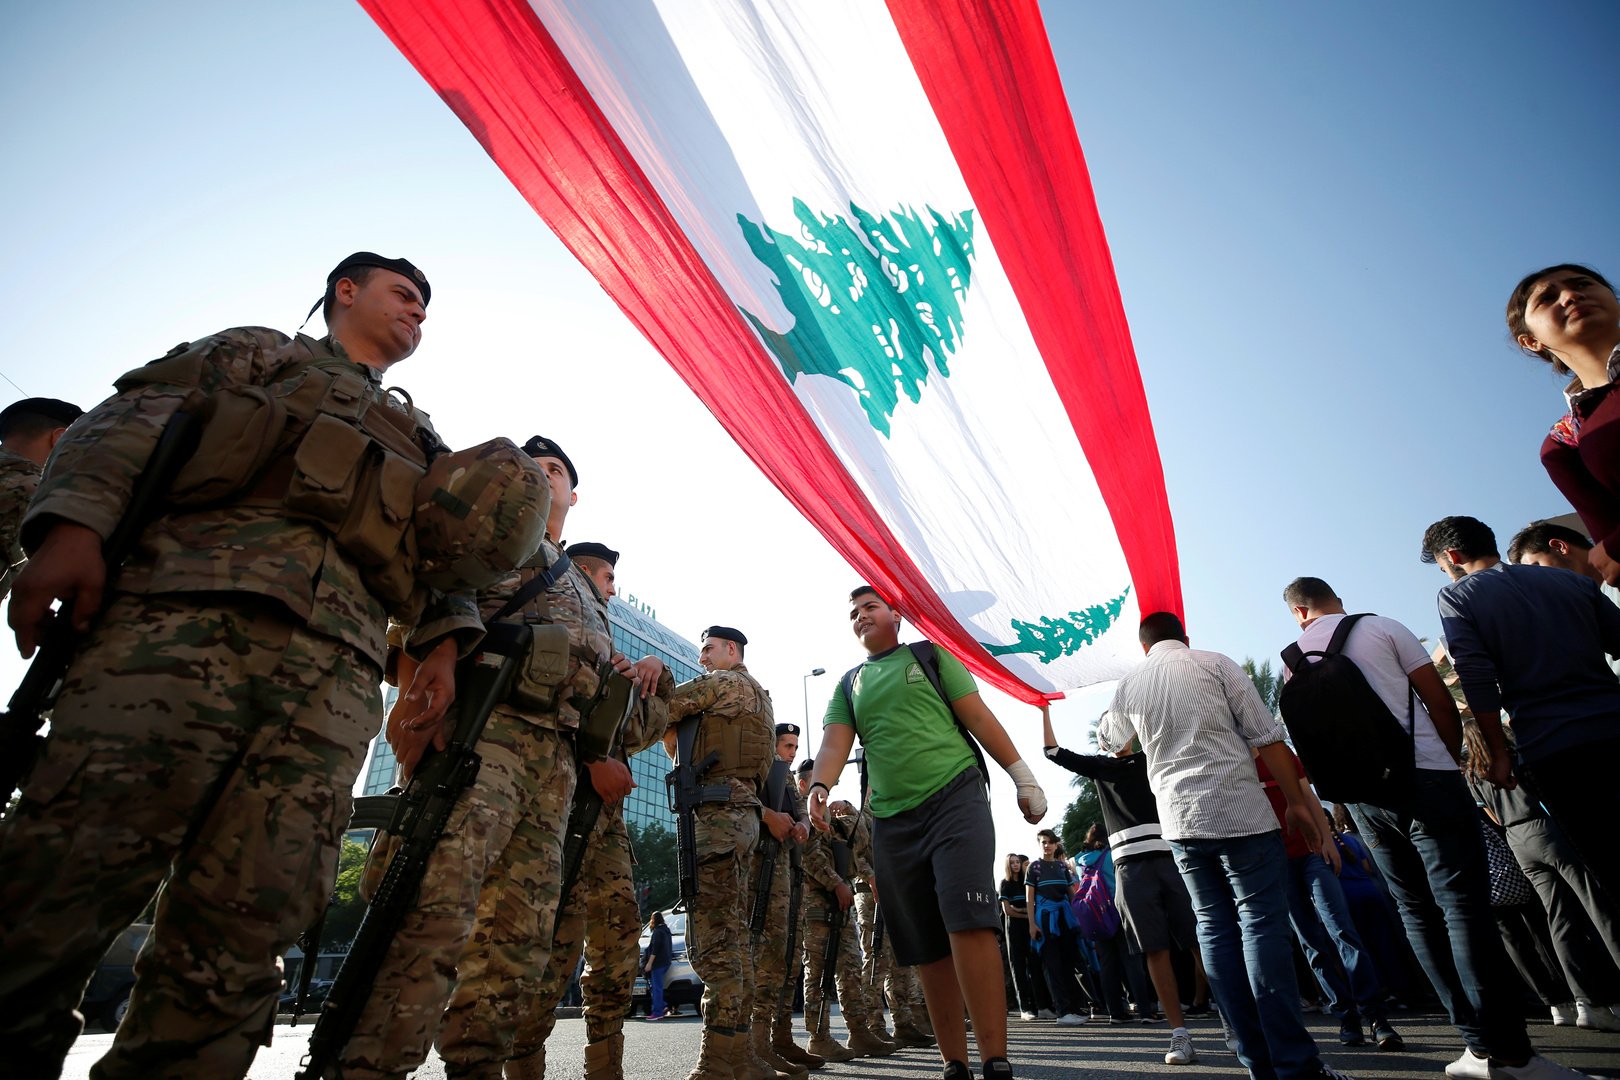 روسيا تؤكد دعمها لوحدة وسيادة لبنان وترفض أي محاولات للتدخل الخارجي في شؤونه